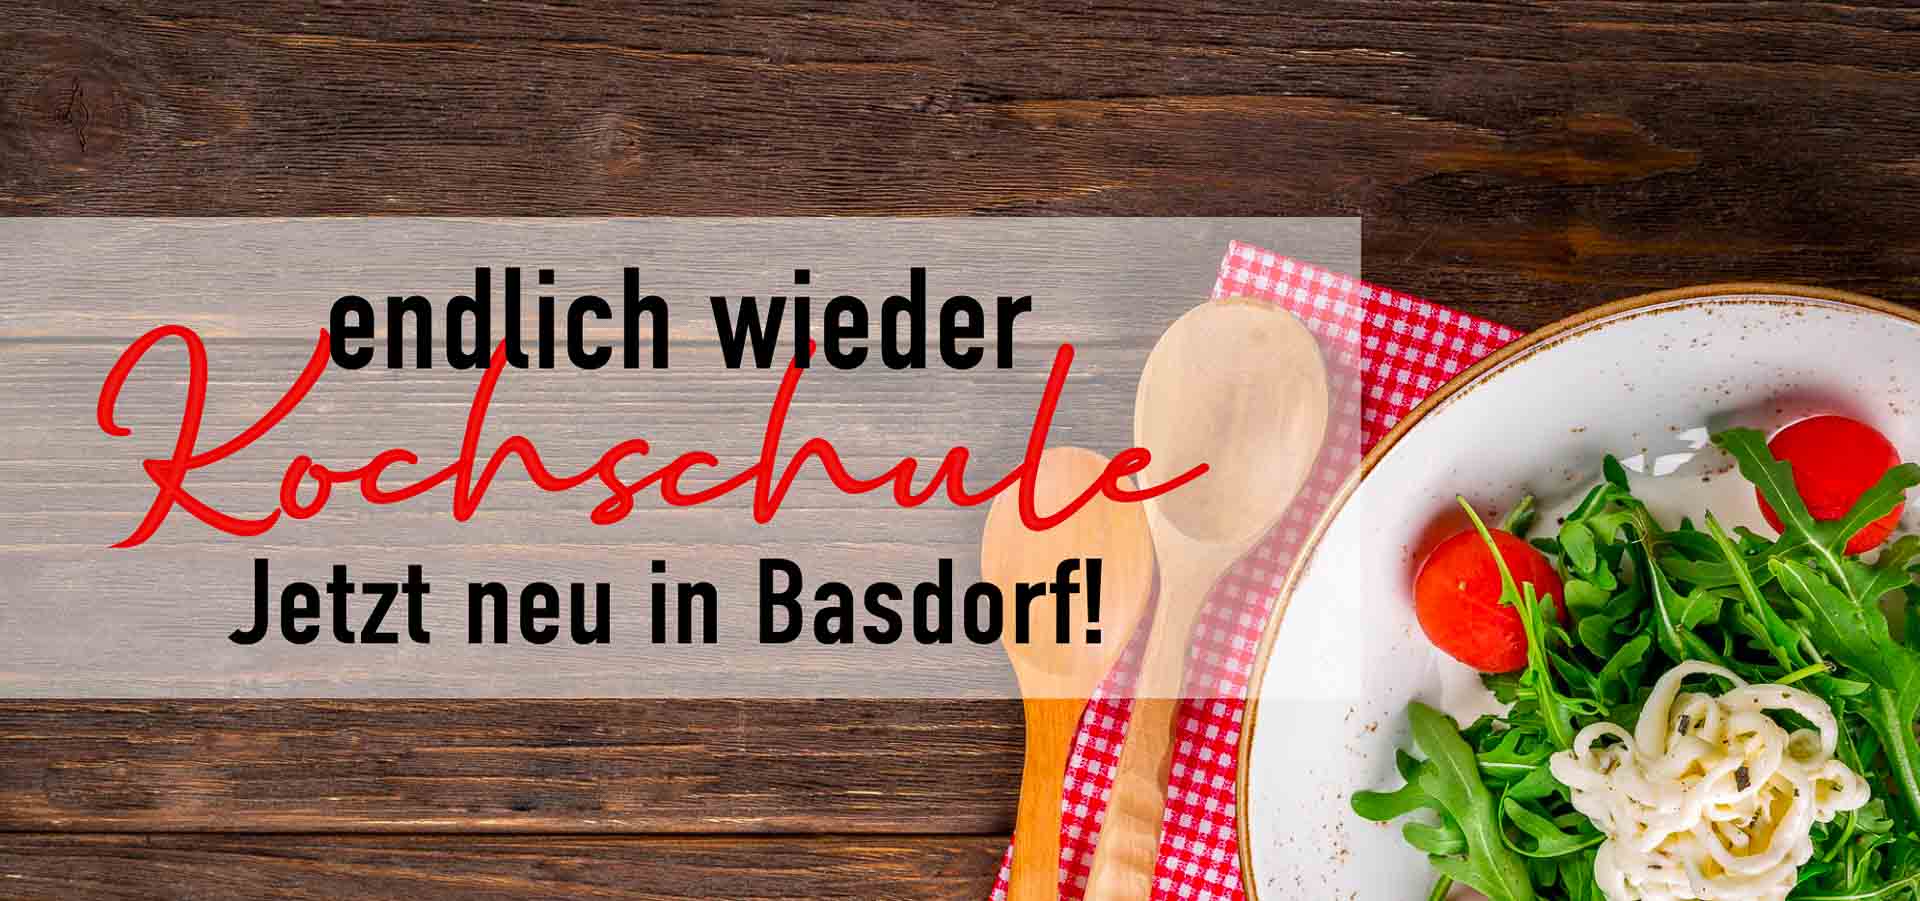 Kochschule in Basdorf lädt zum gemeinsamen Kochabend ein